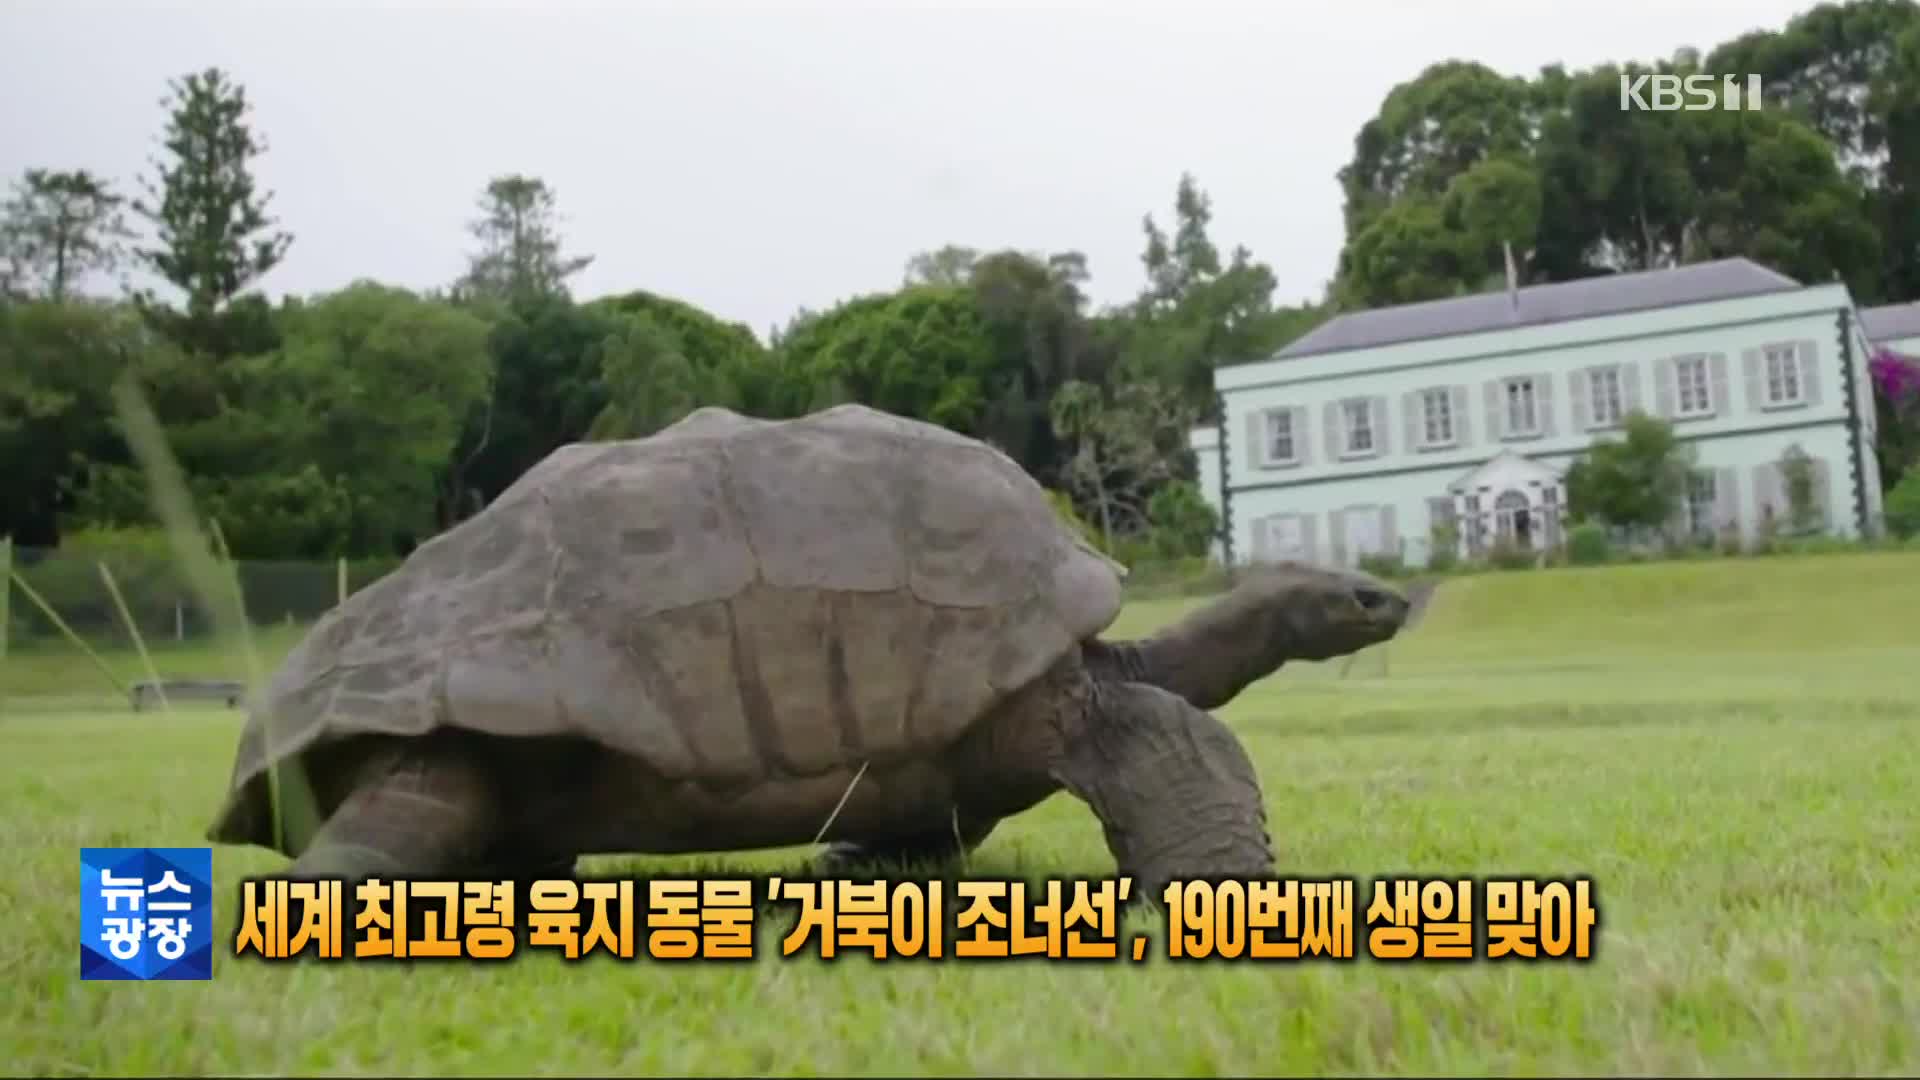 [톡톡 지구촌] 세계 최고령 육지동물 ‘거북이 조너선’…190번째 생일맞아